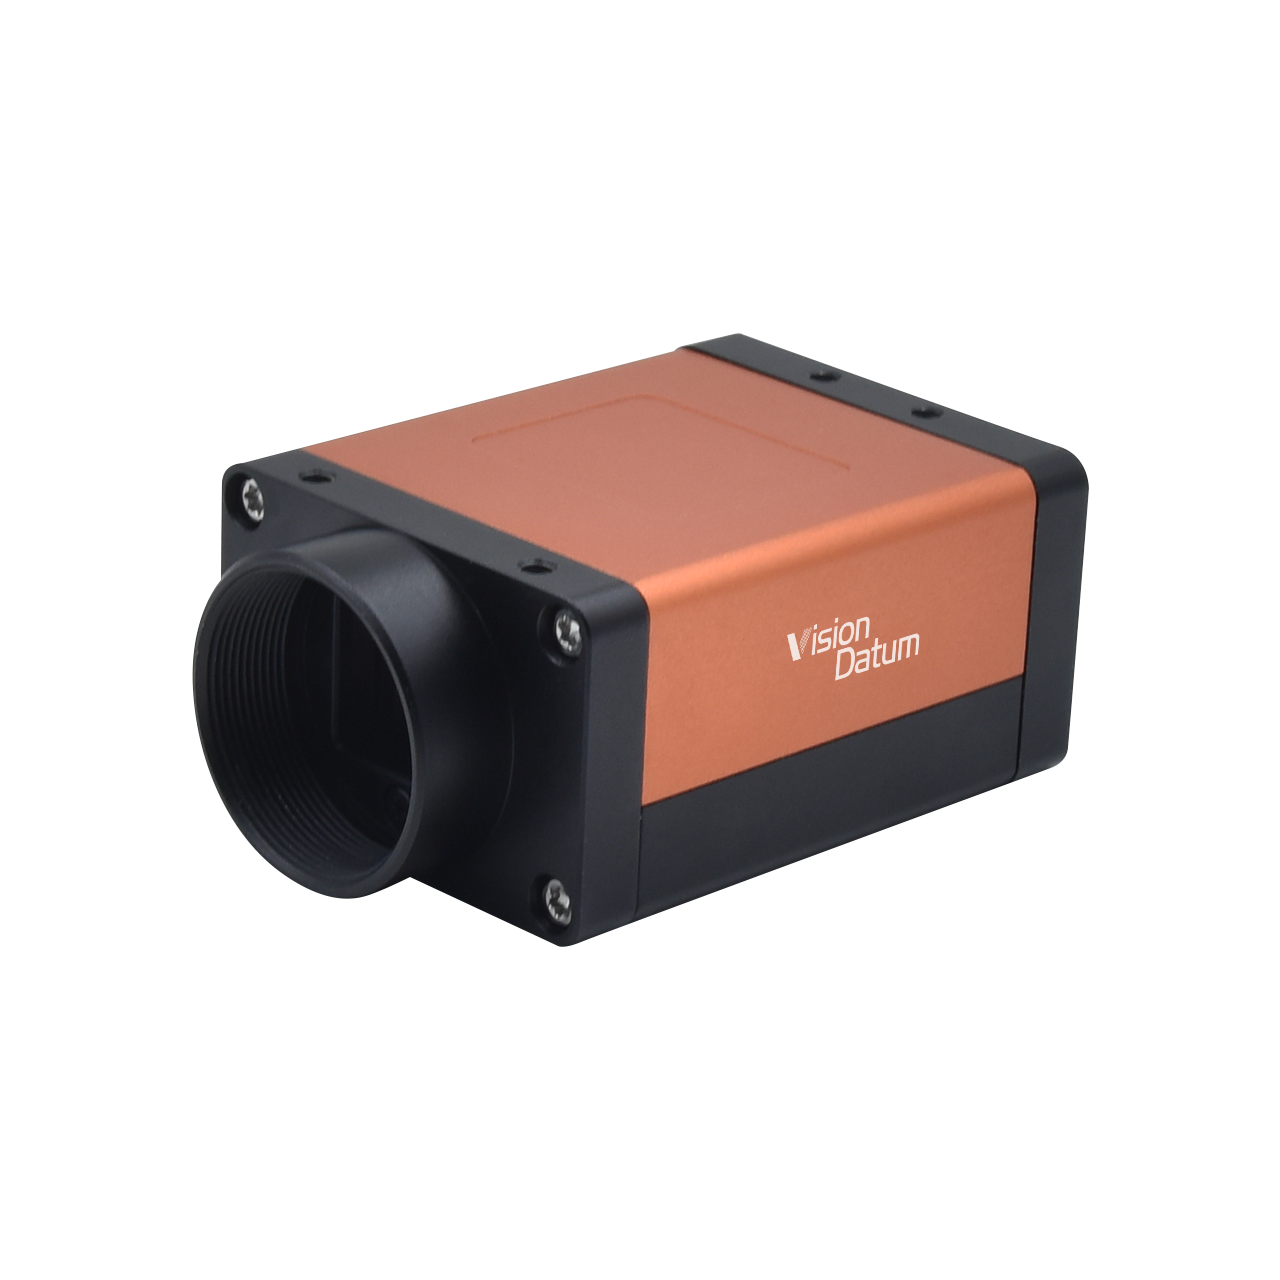 Камера IMX287 0,4 МП, 349 кадров в секунду, камера с глобальным сканированием затвора CameraLink